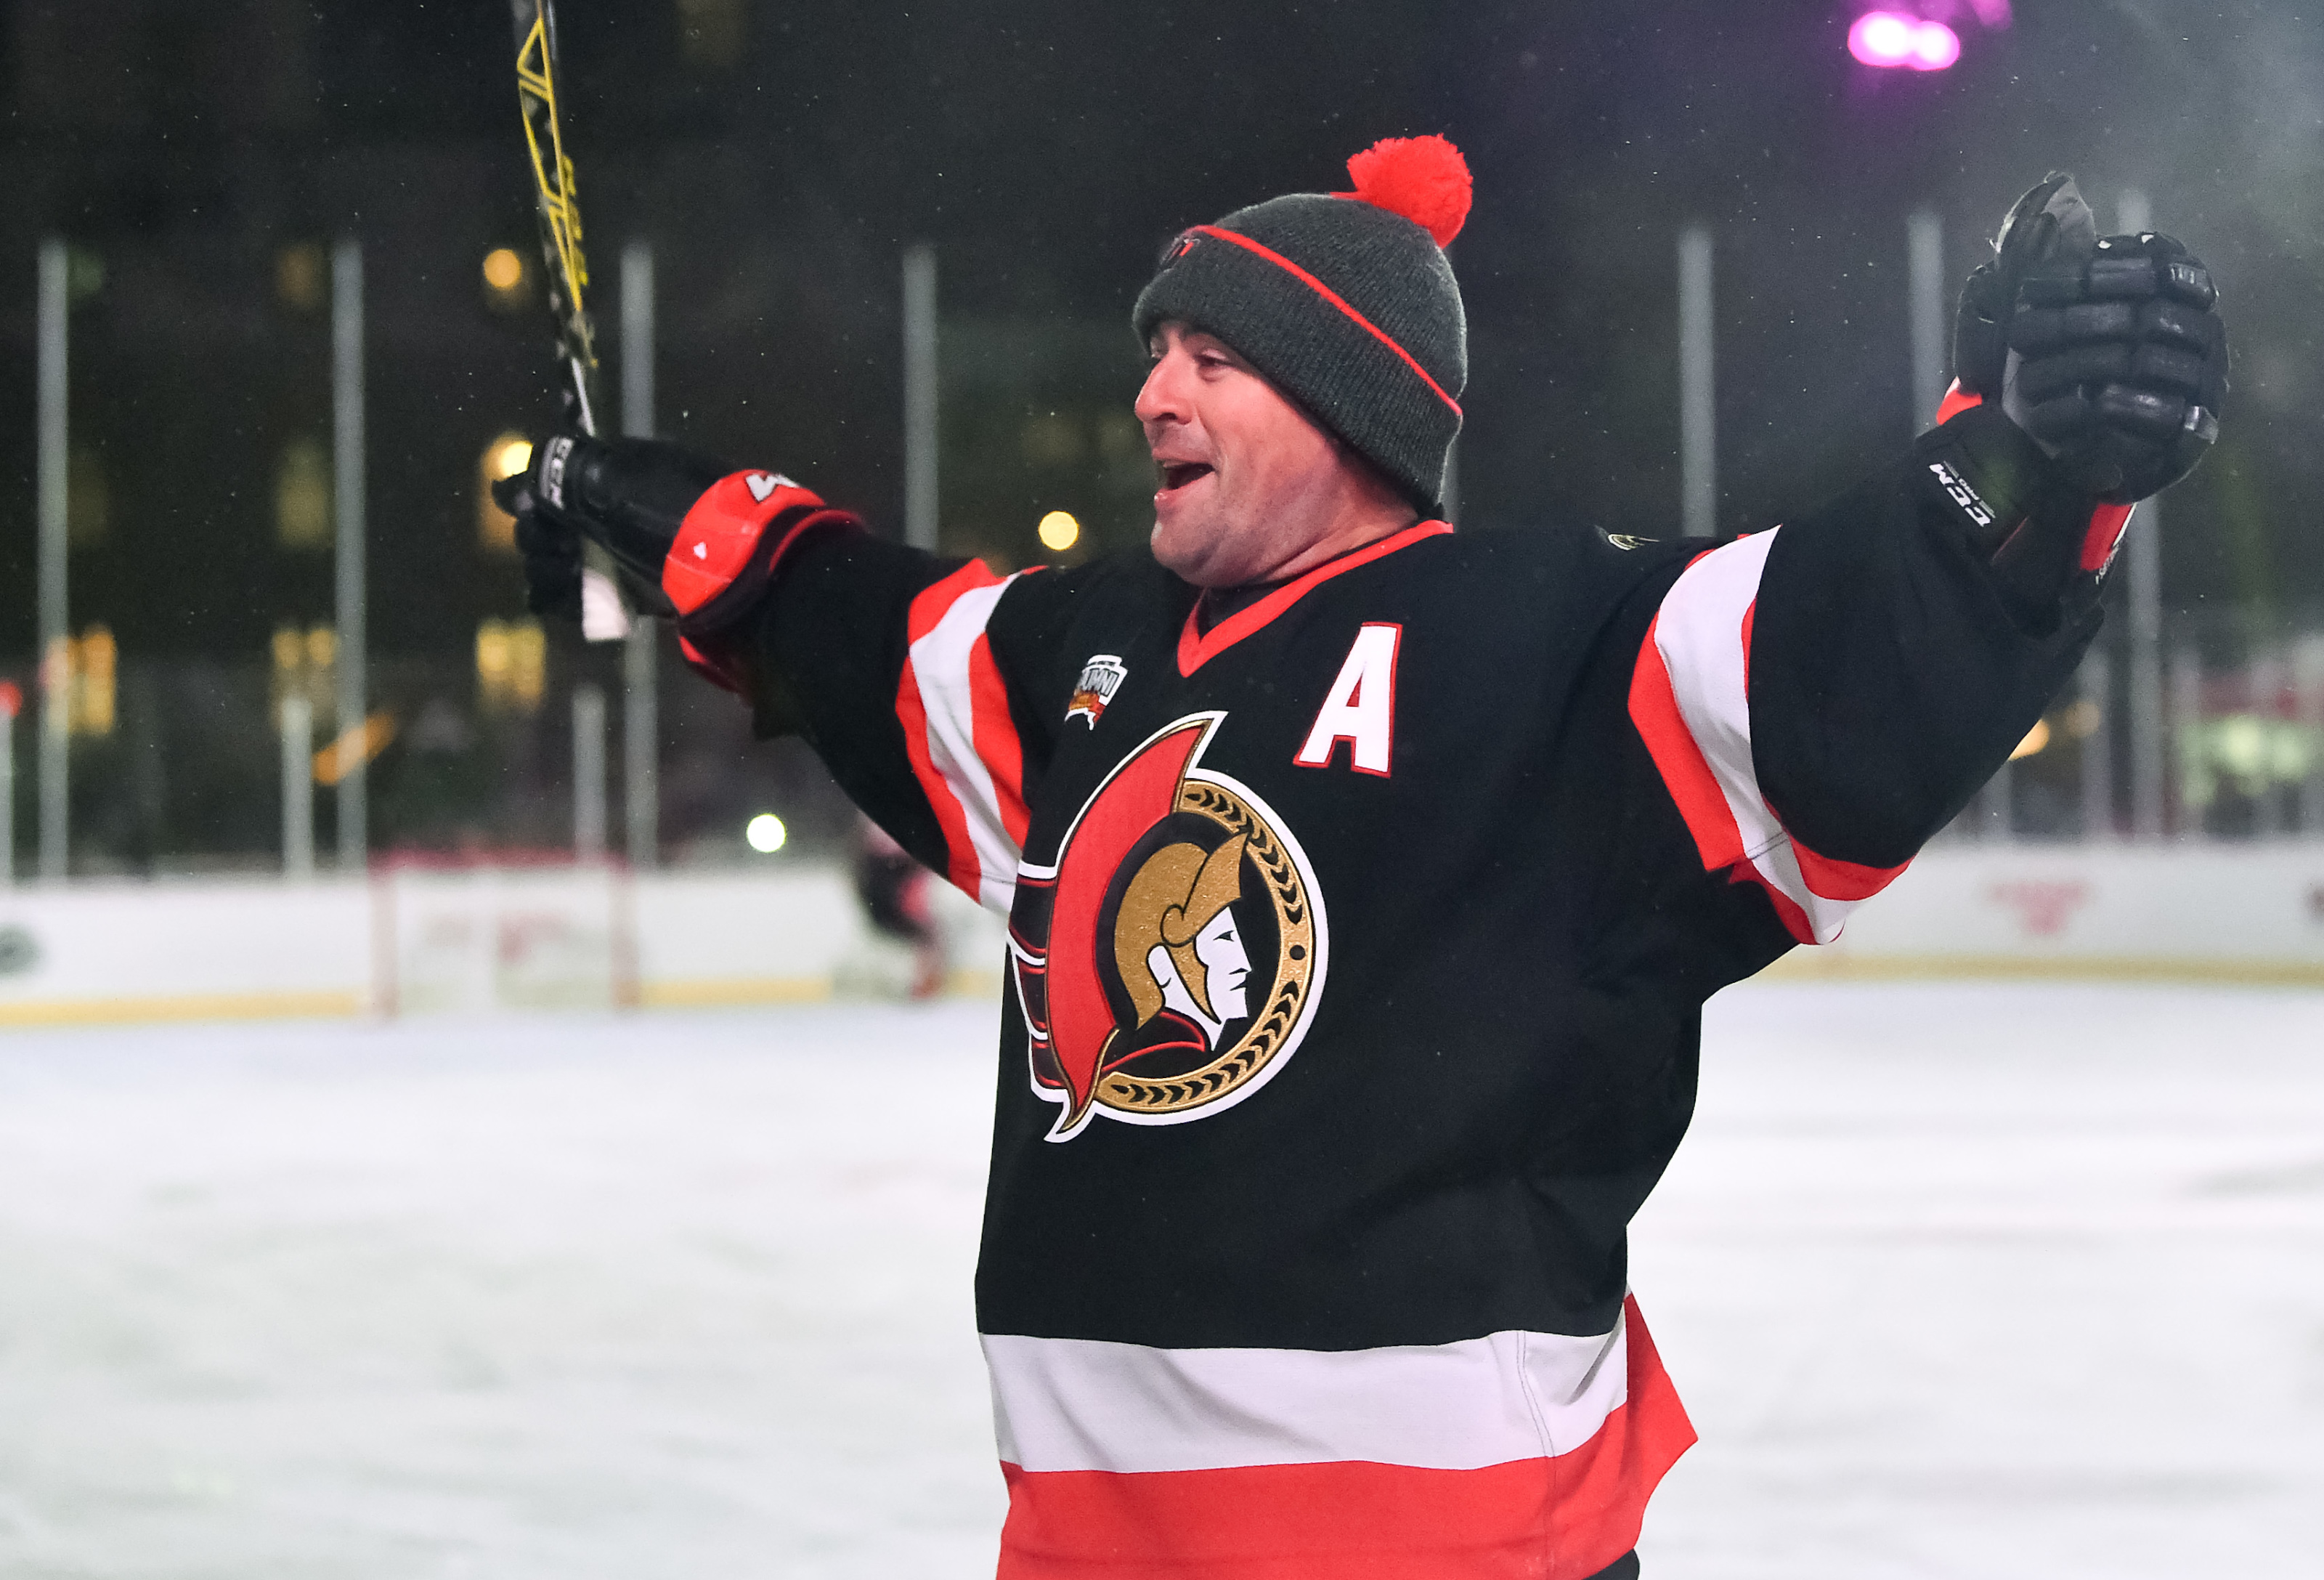 Ottawa Senators Will Retire the Jersey of Daniel Alfredsson